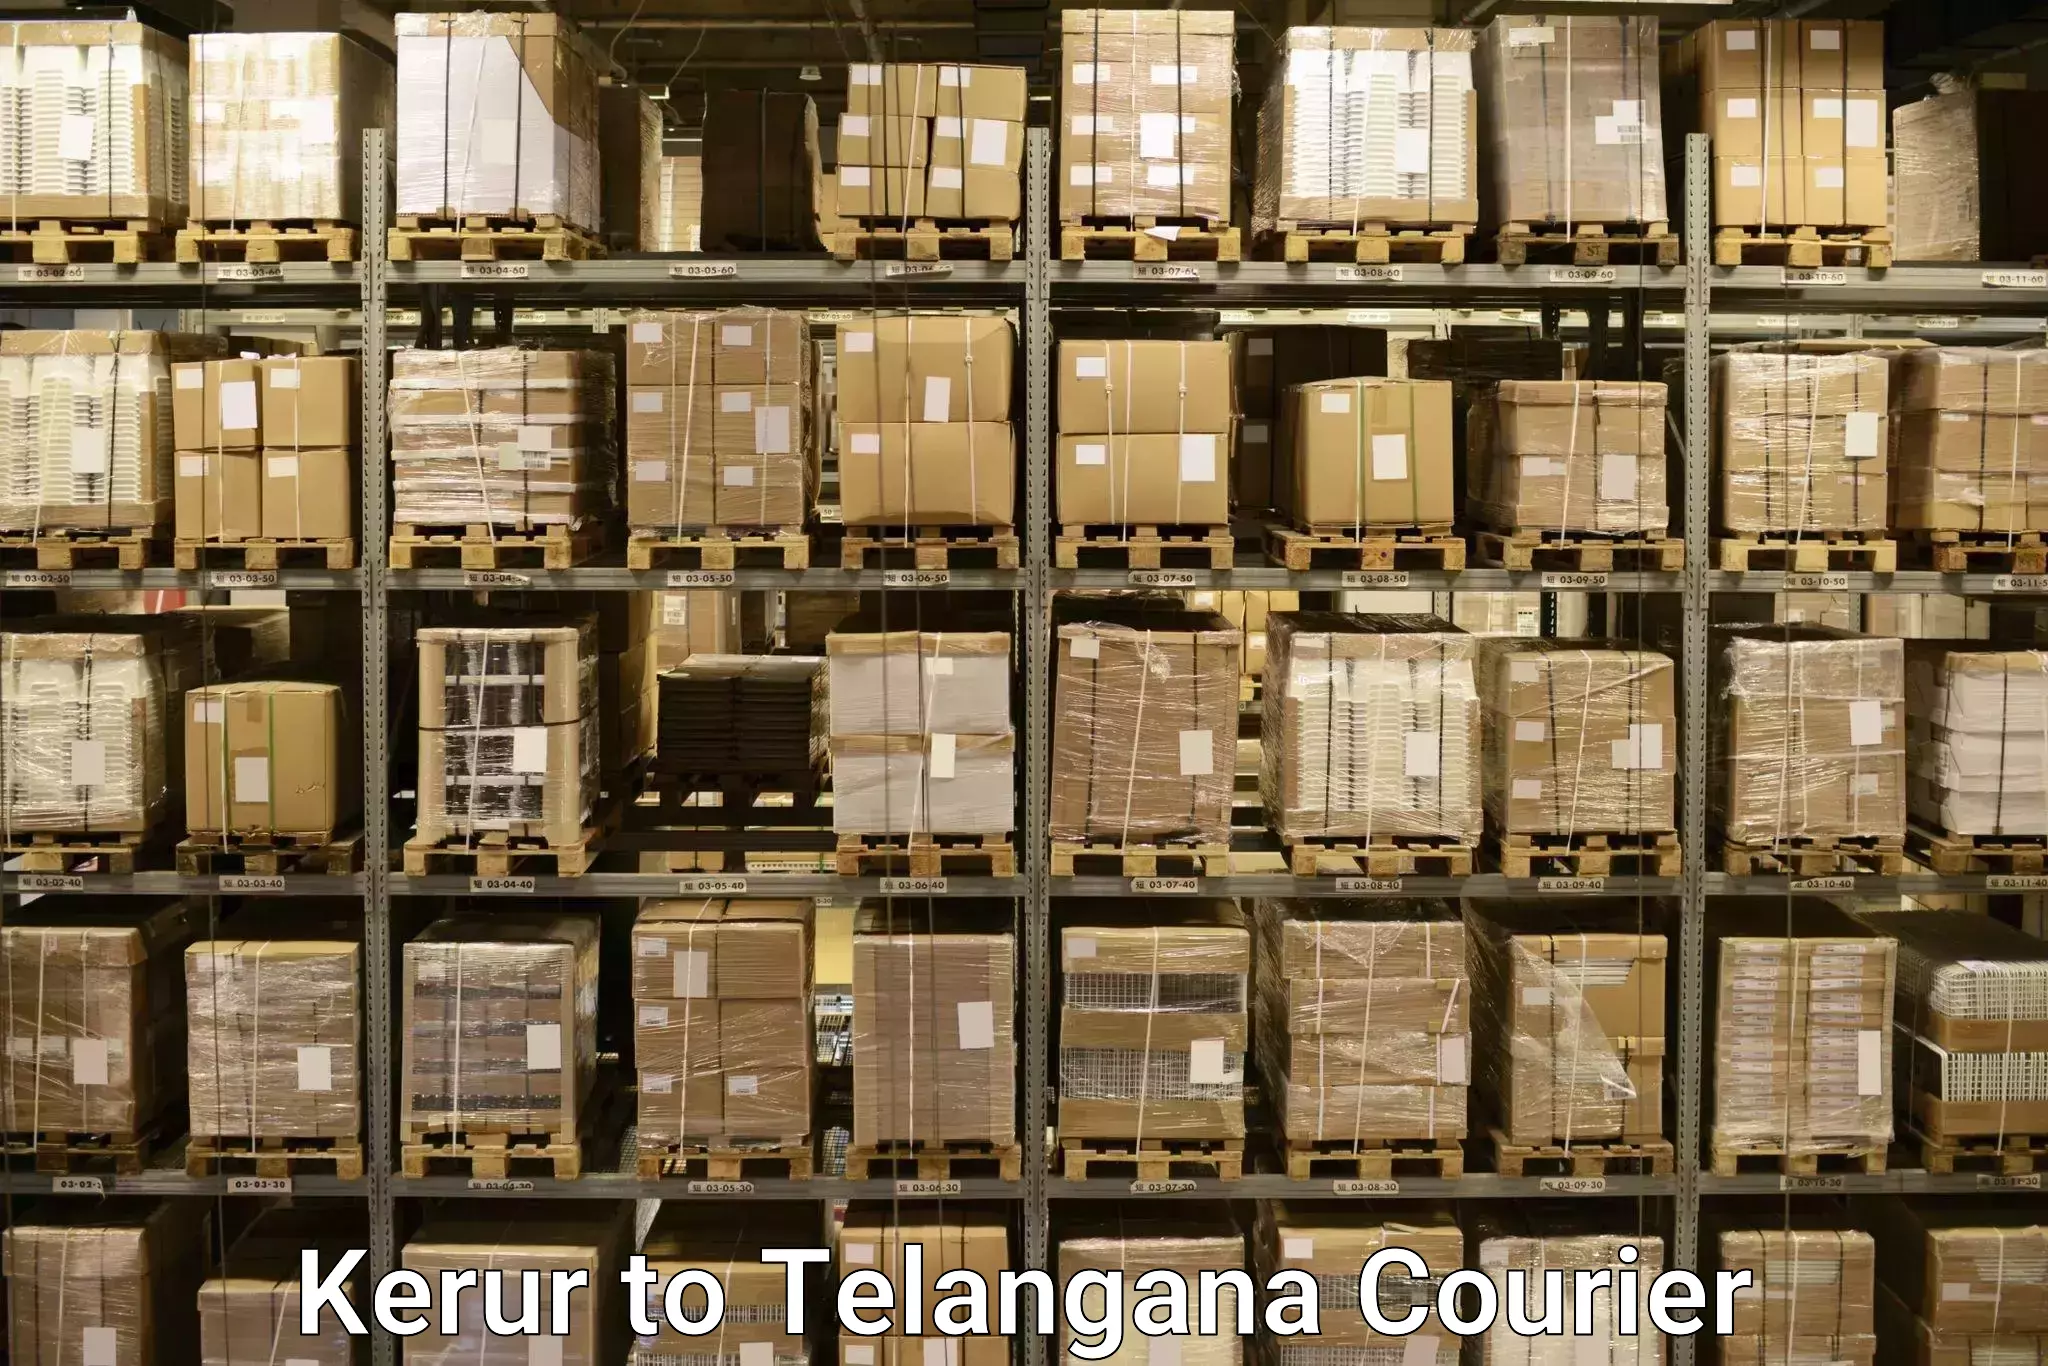 Door-to-door baggage service Kerur to Telangana